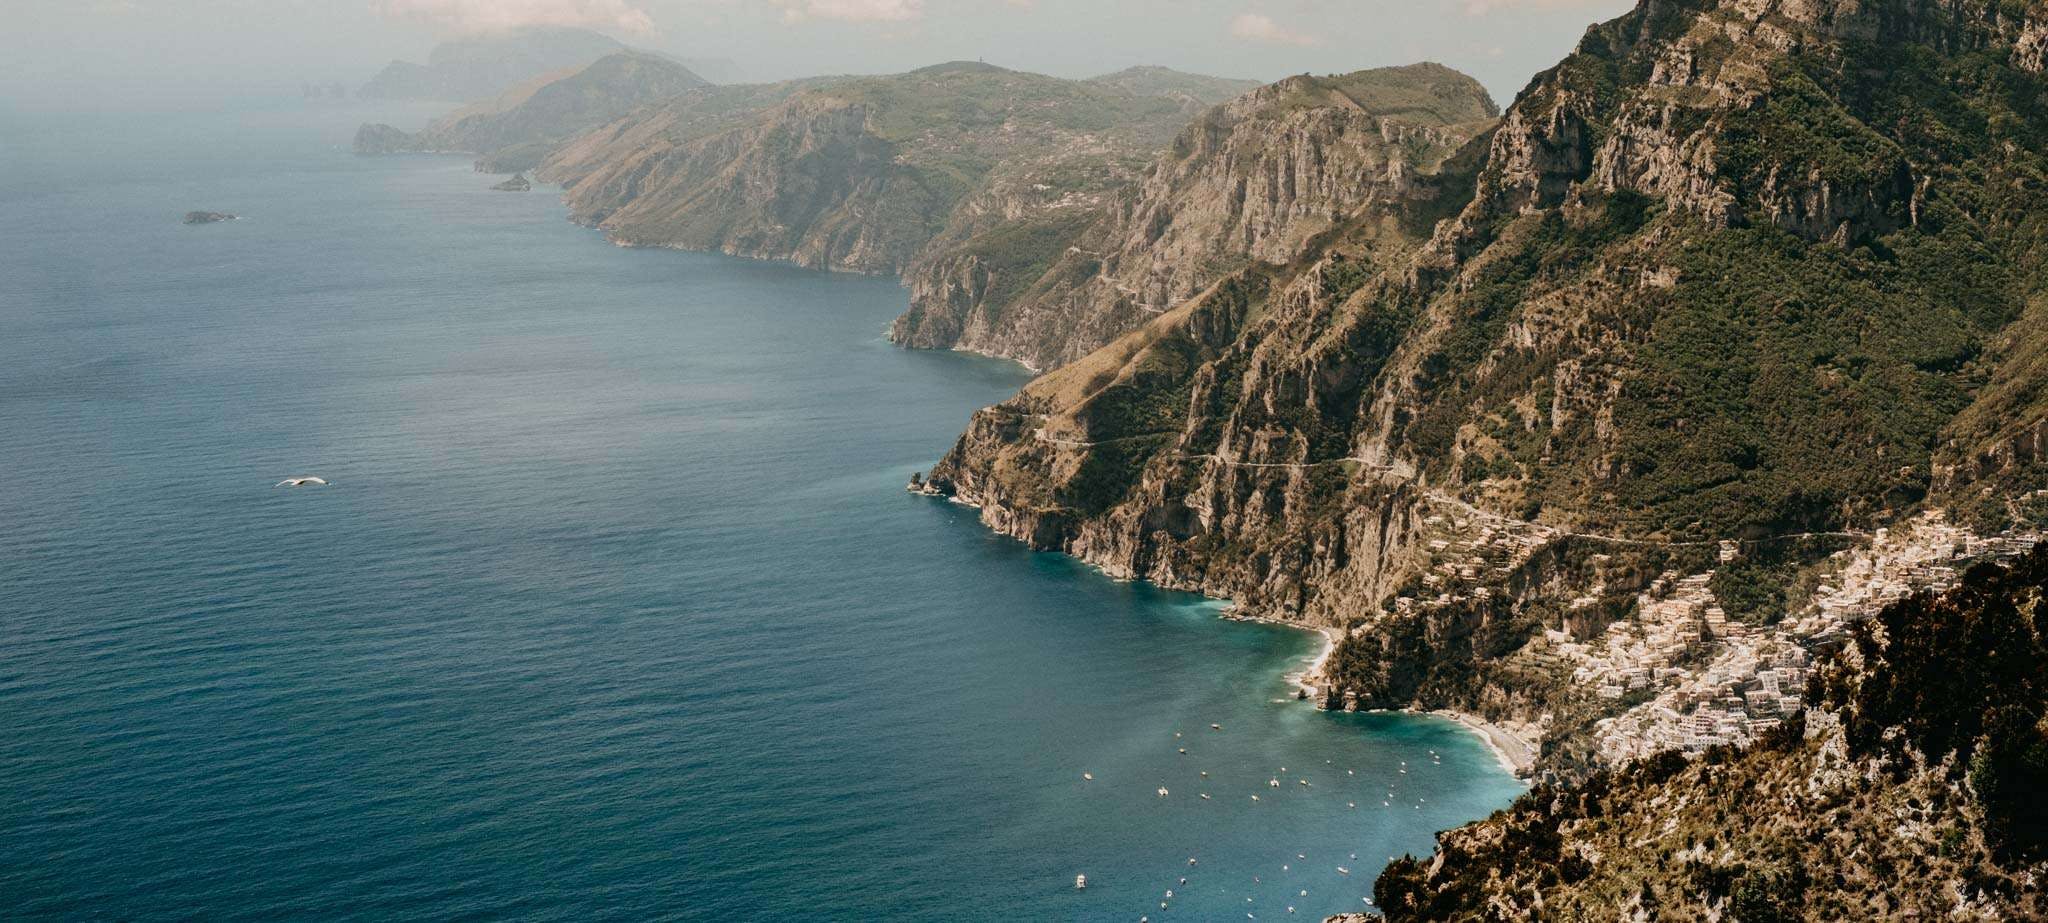 Amalfi Coast is our home